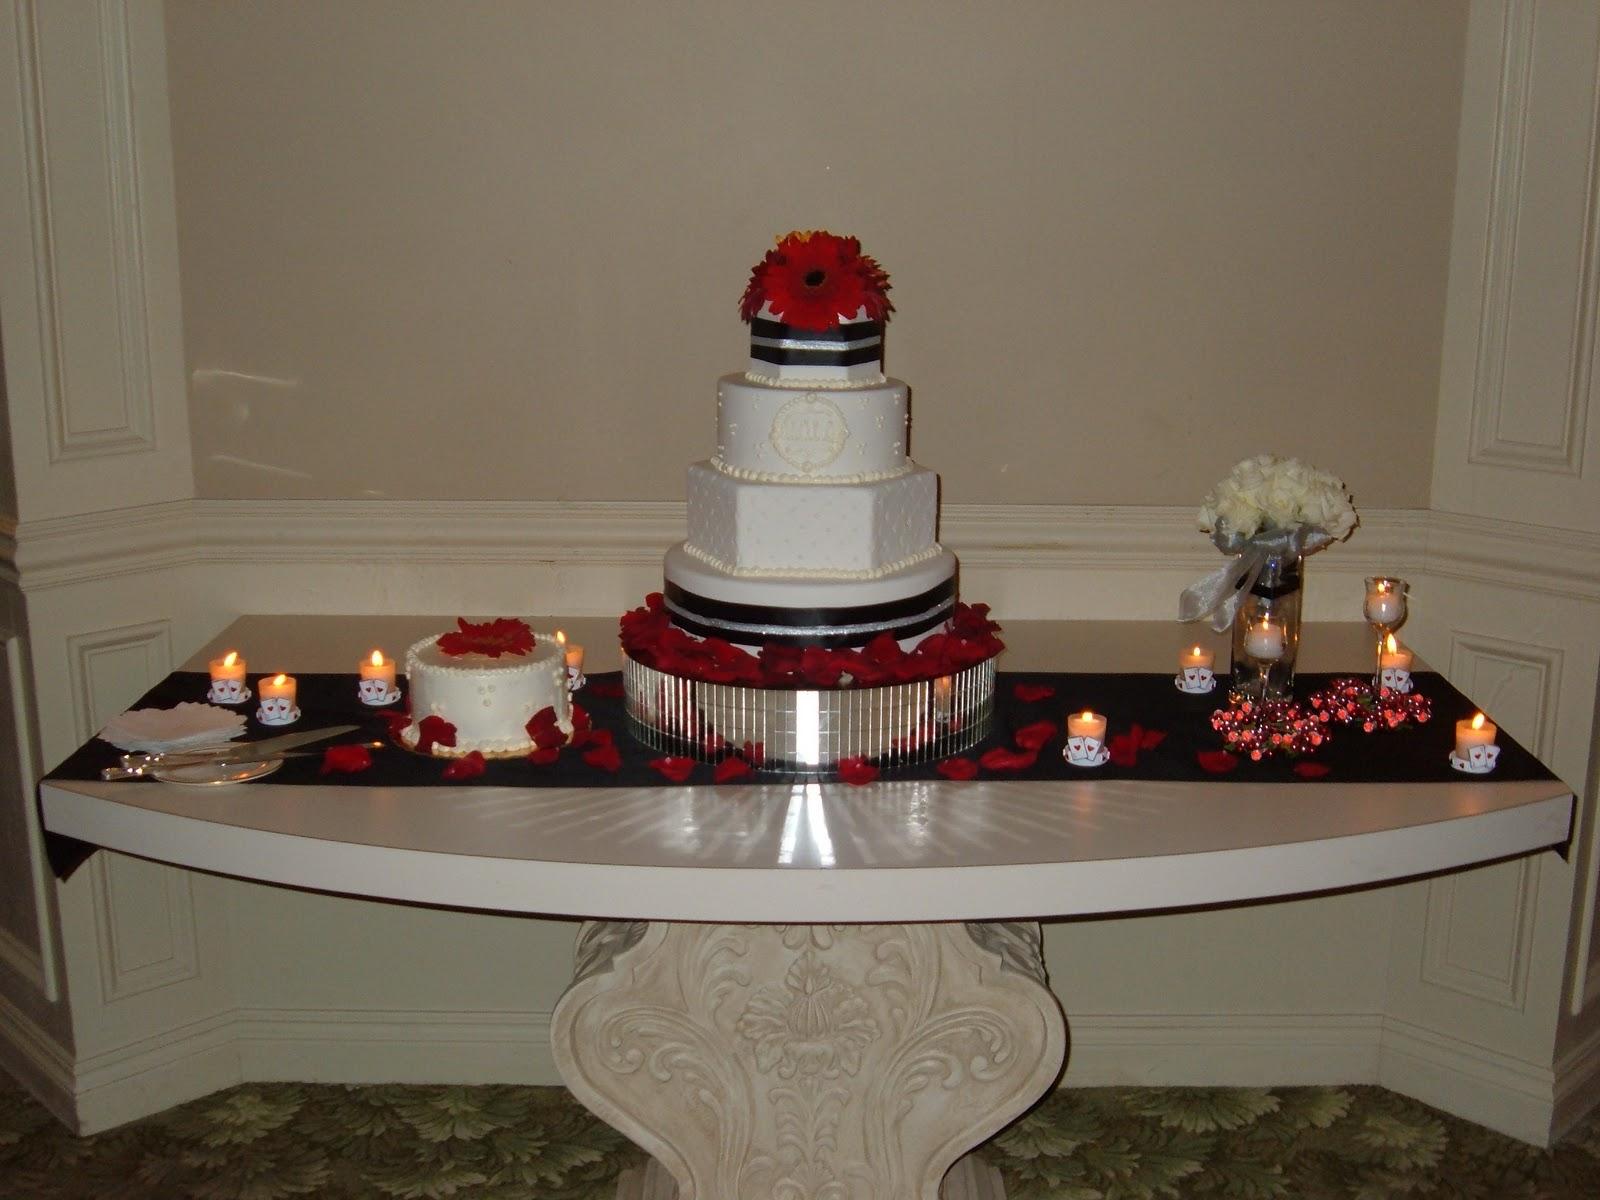 Vote for Best Wedding Cake